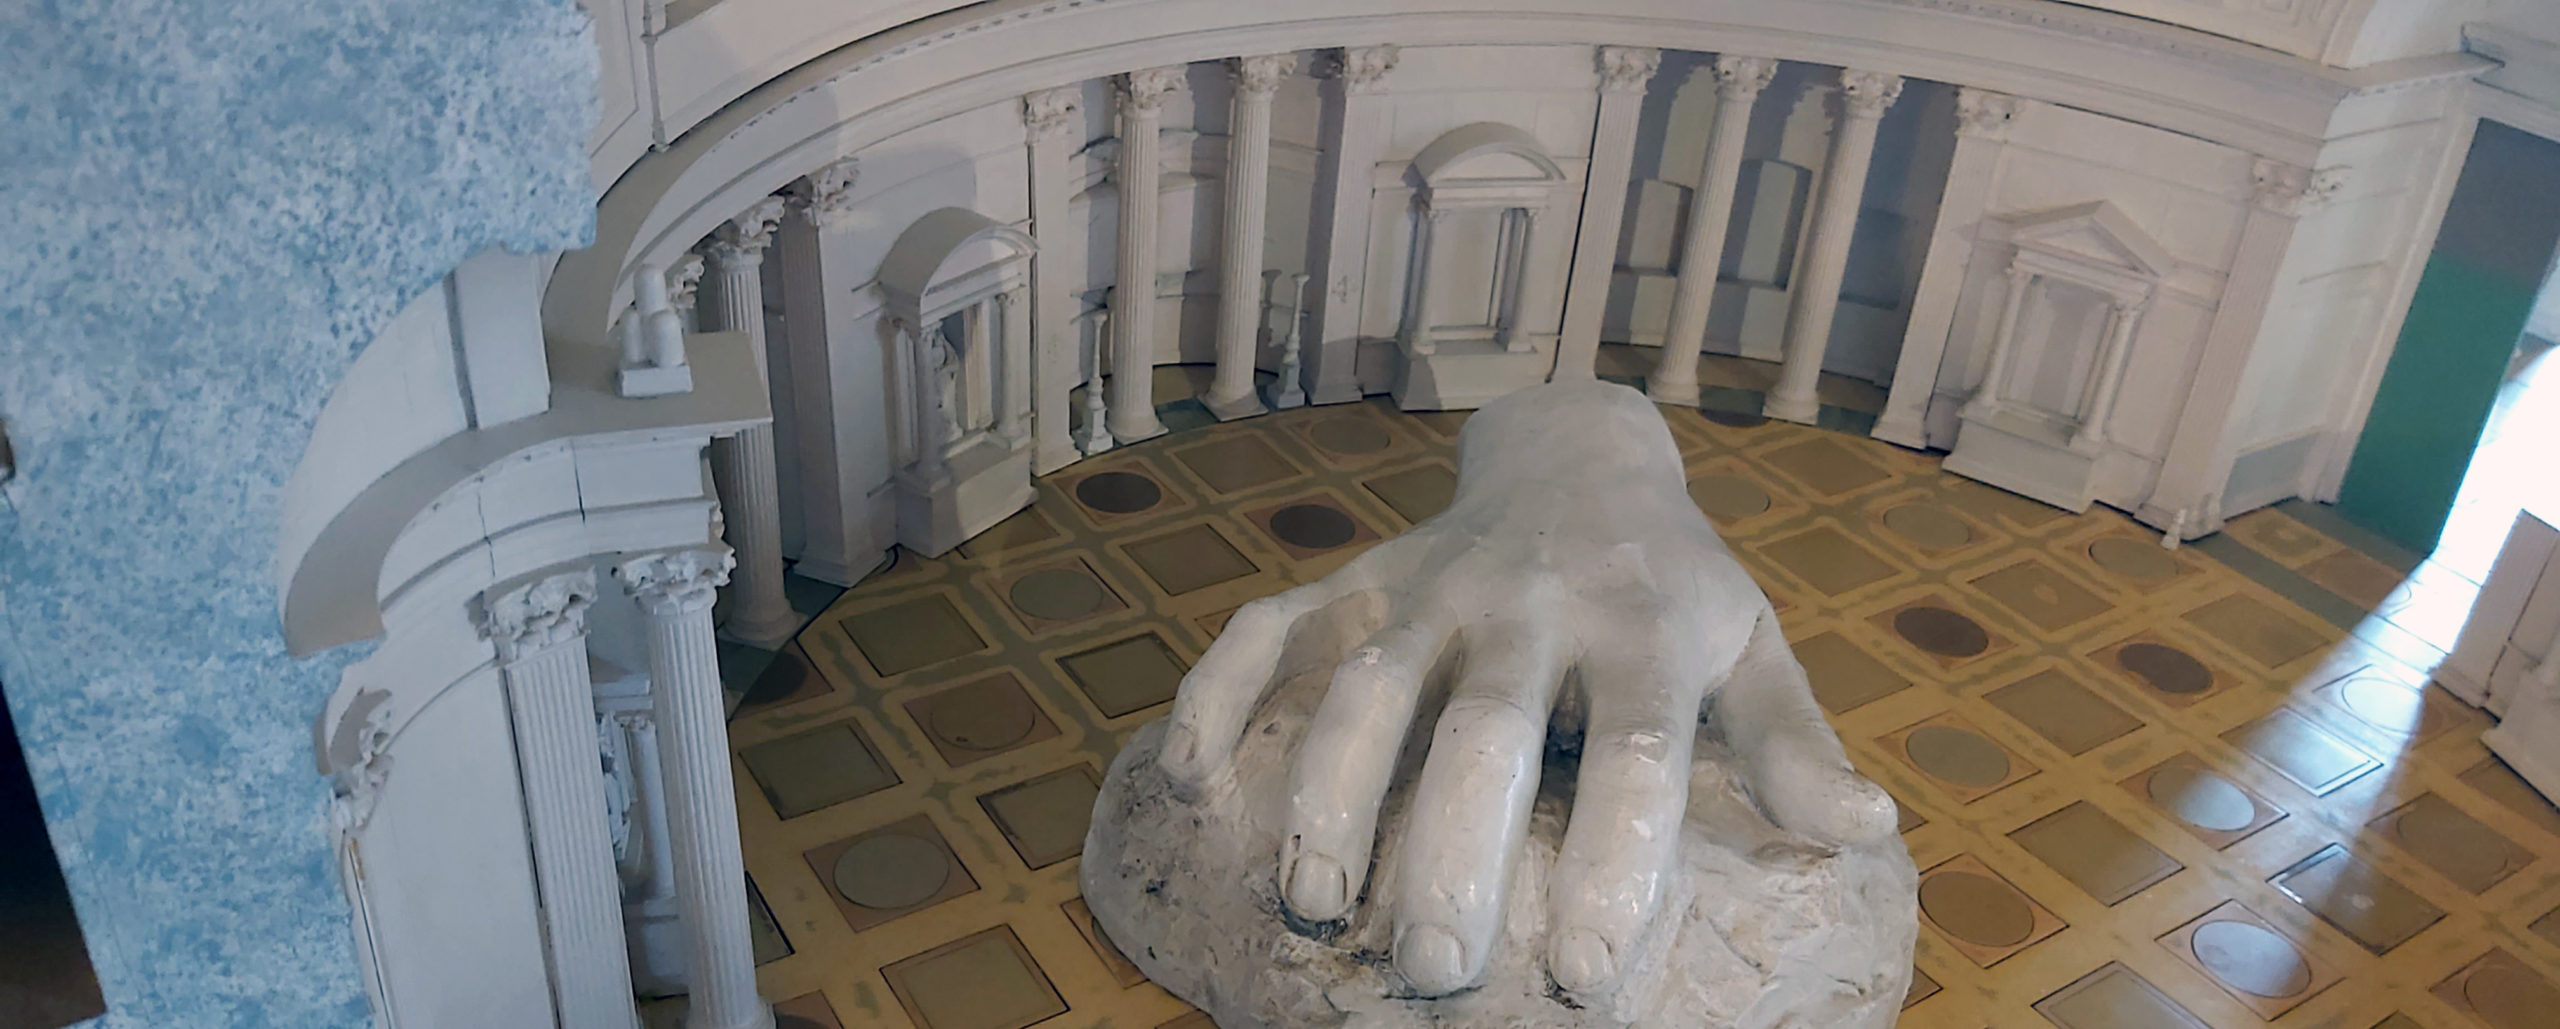 Una mano in gesso è collocata al centro del modellino architettonico del Pantheon